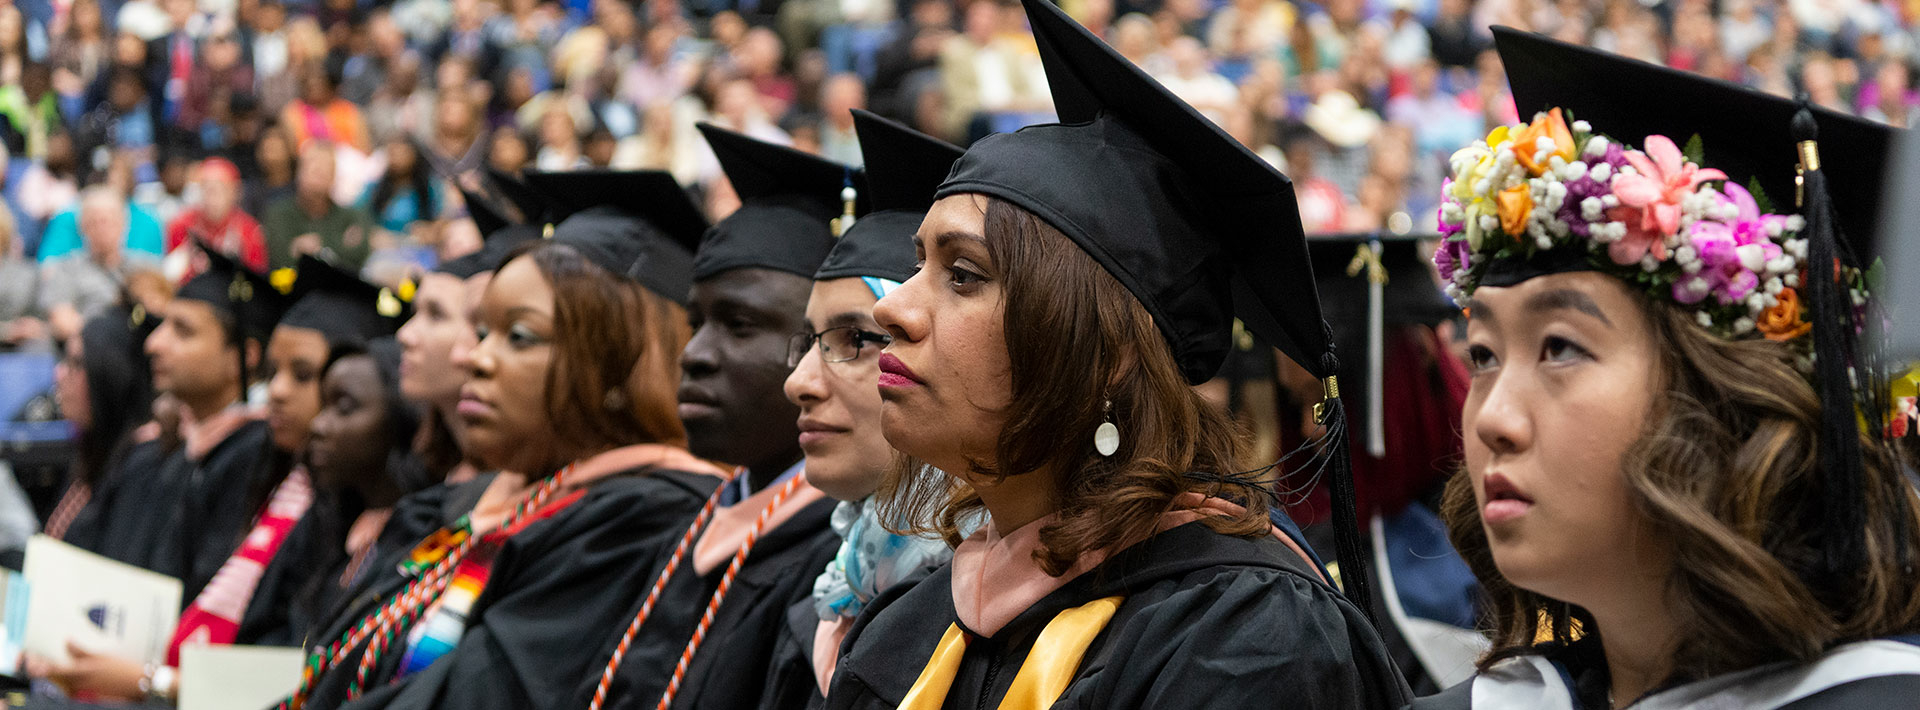 Graduates listen to commencement speech